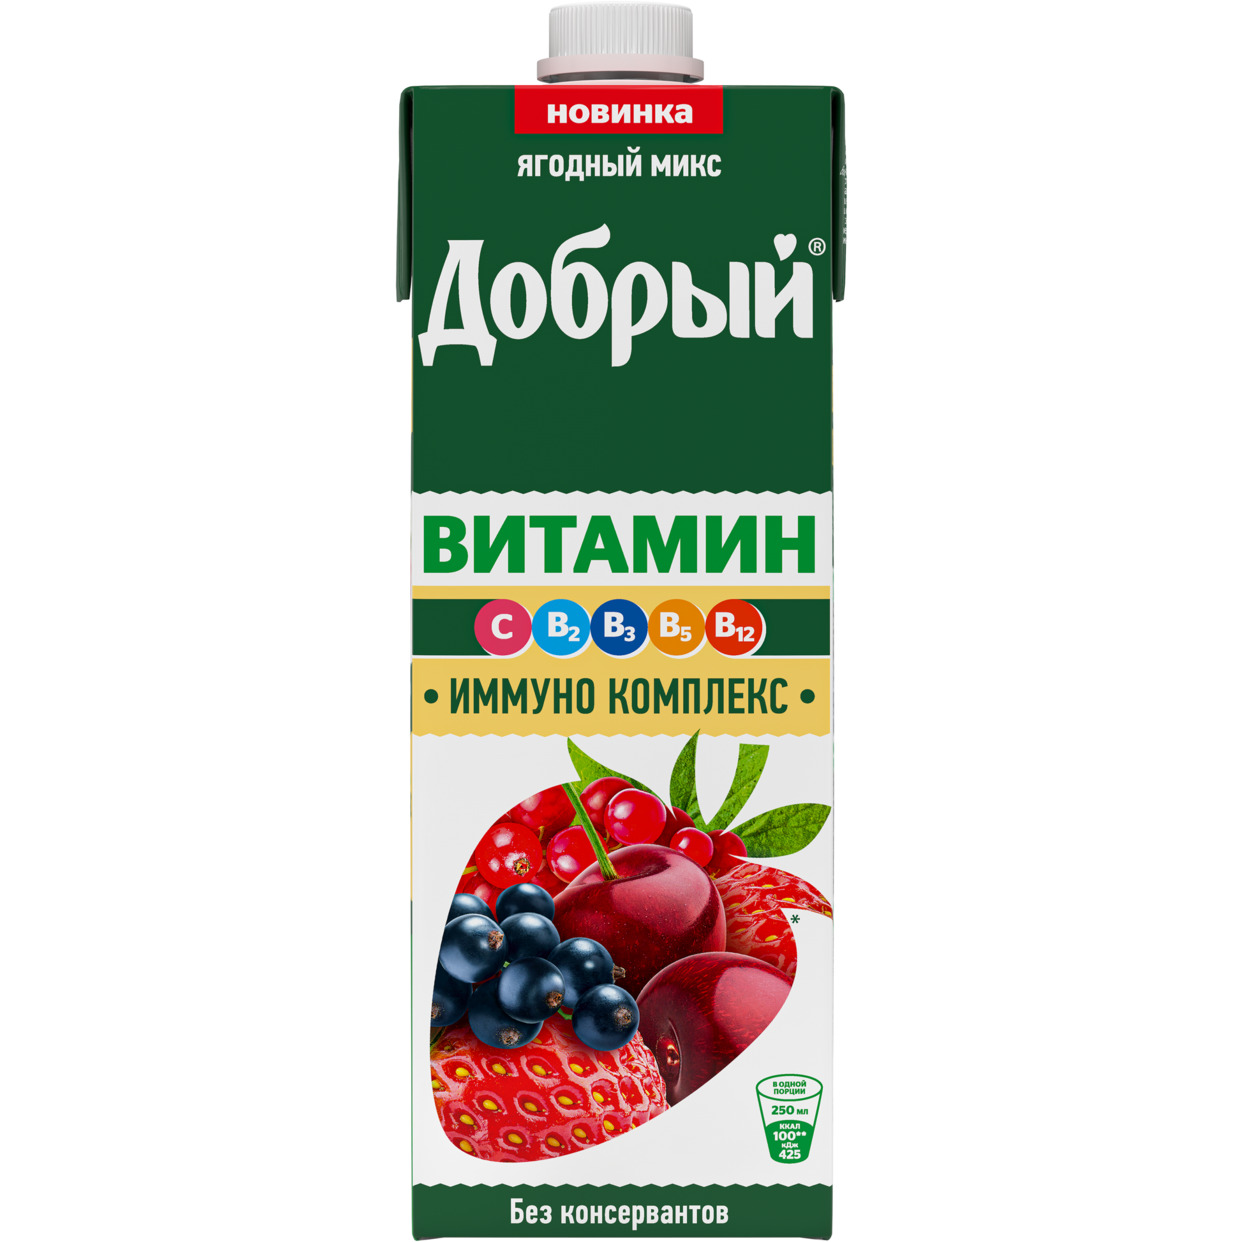 Добрый напиток сокосодерж фрукт-ягод обогощ витамин "Ягодный микс"